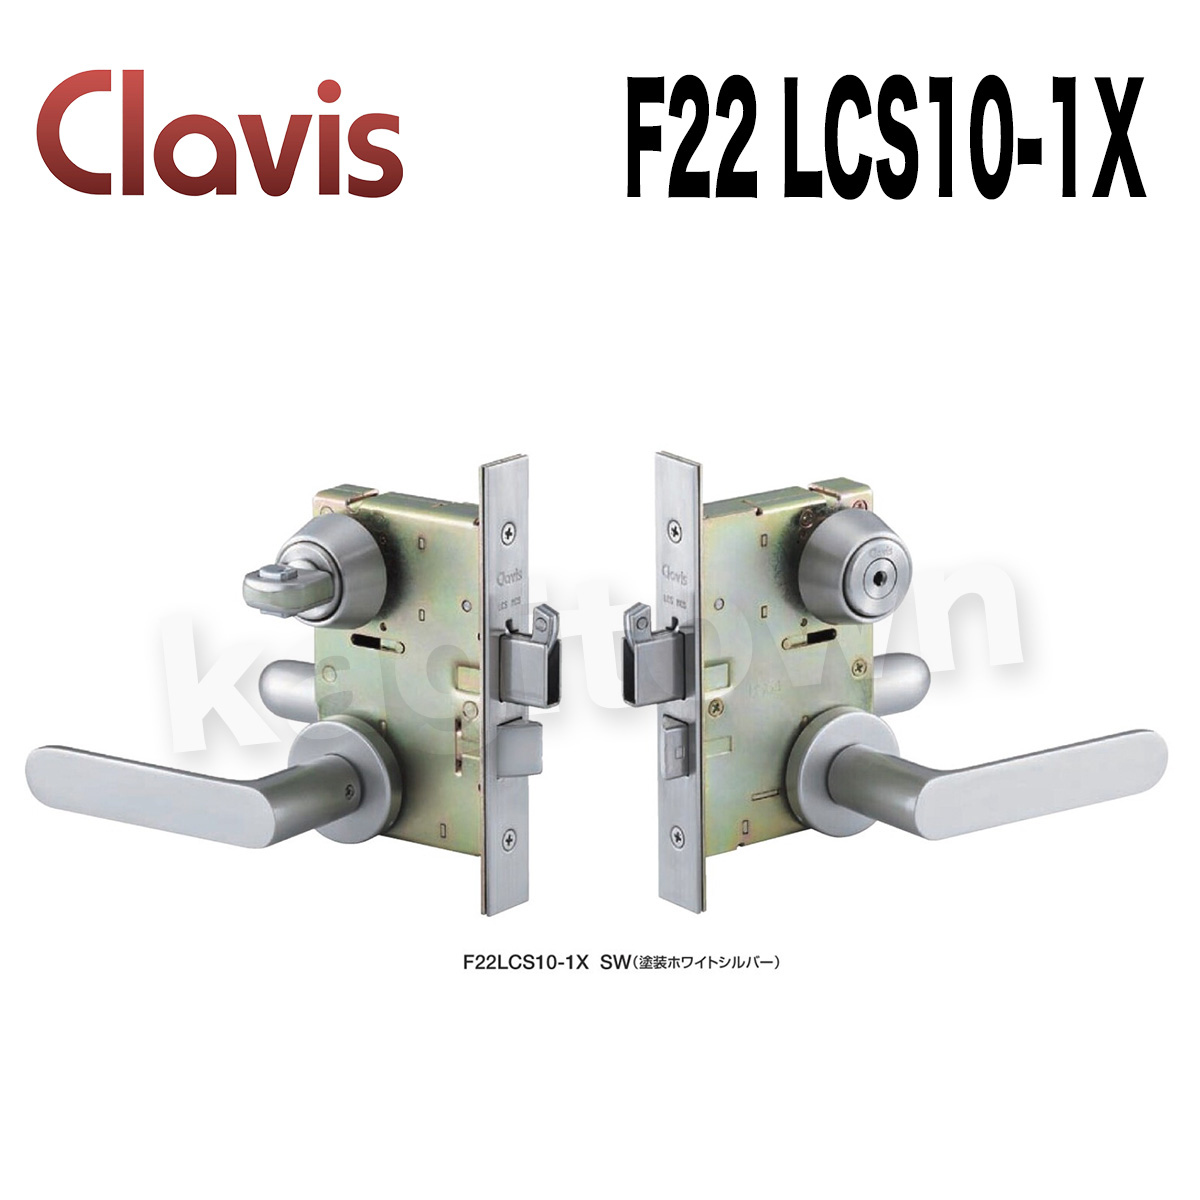 Clavis F22 LCS10-1X【クラビス】レバーハンドル錠/鎌式デッド 納期1~3週間